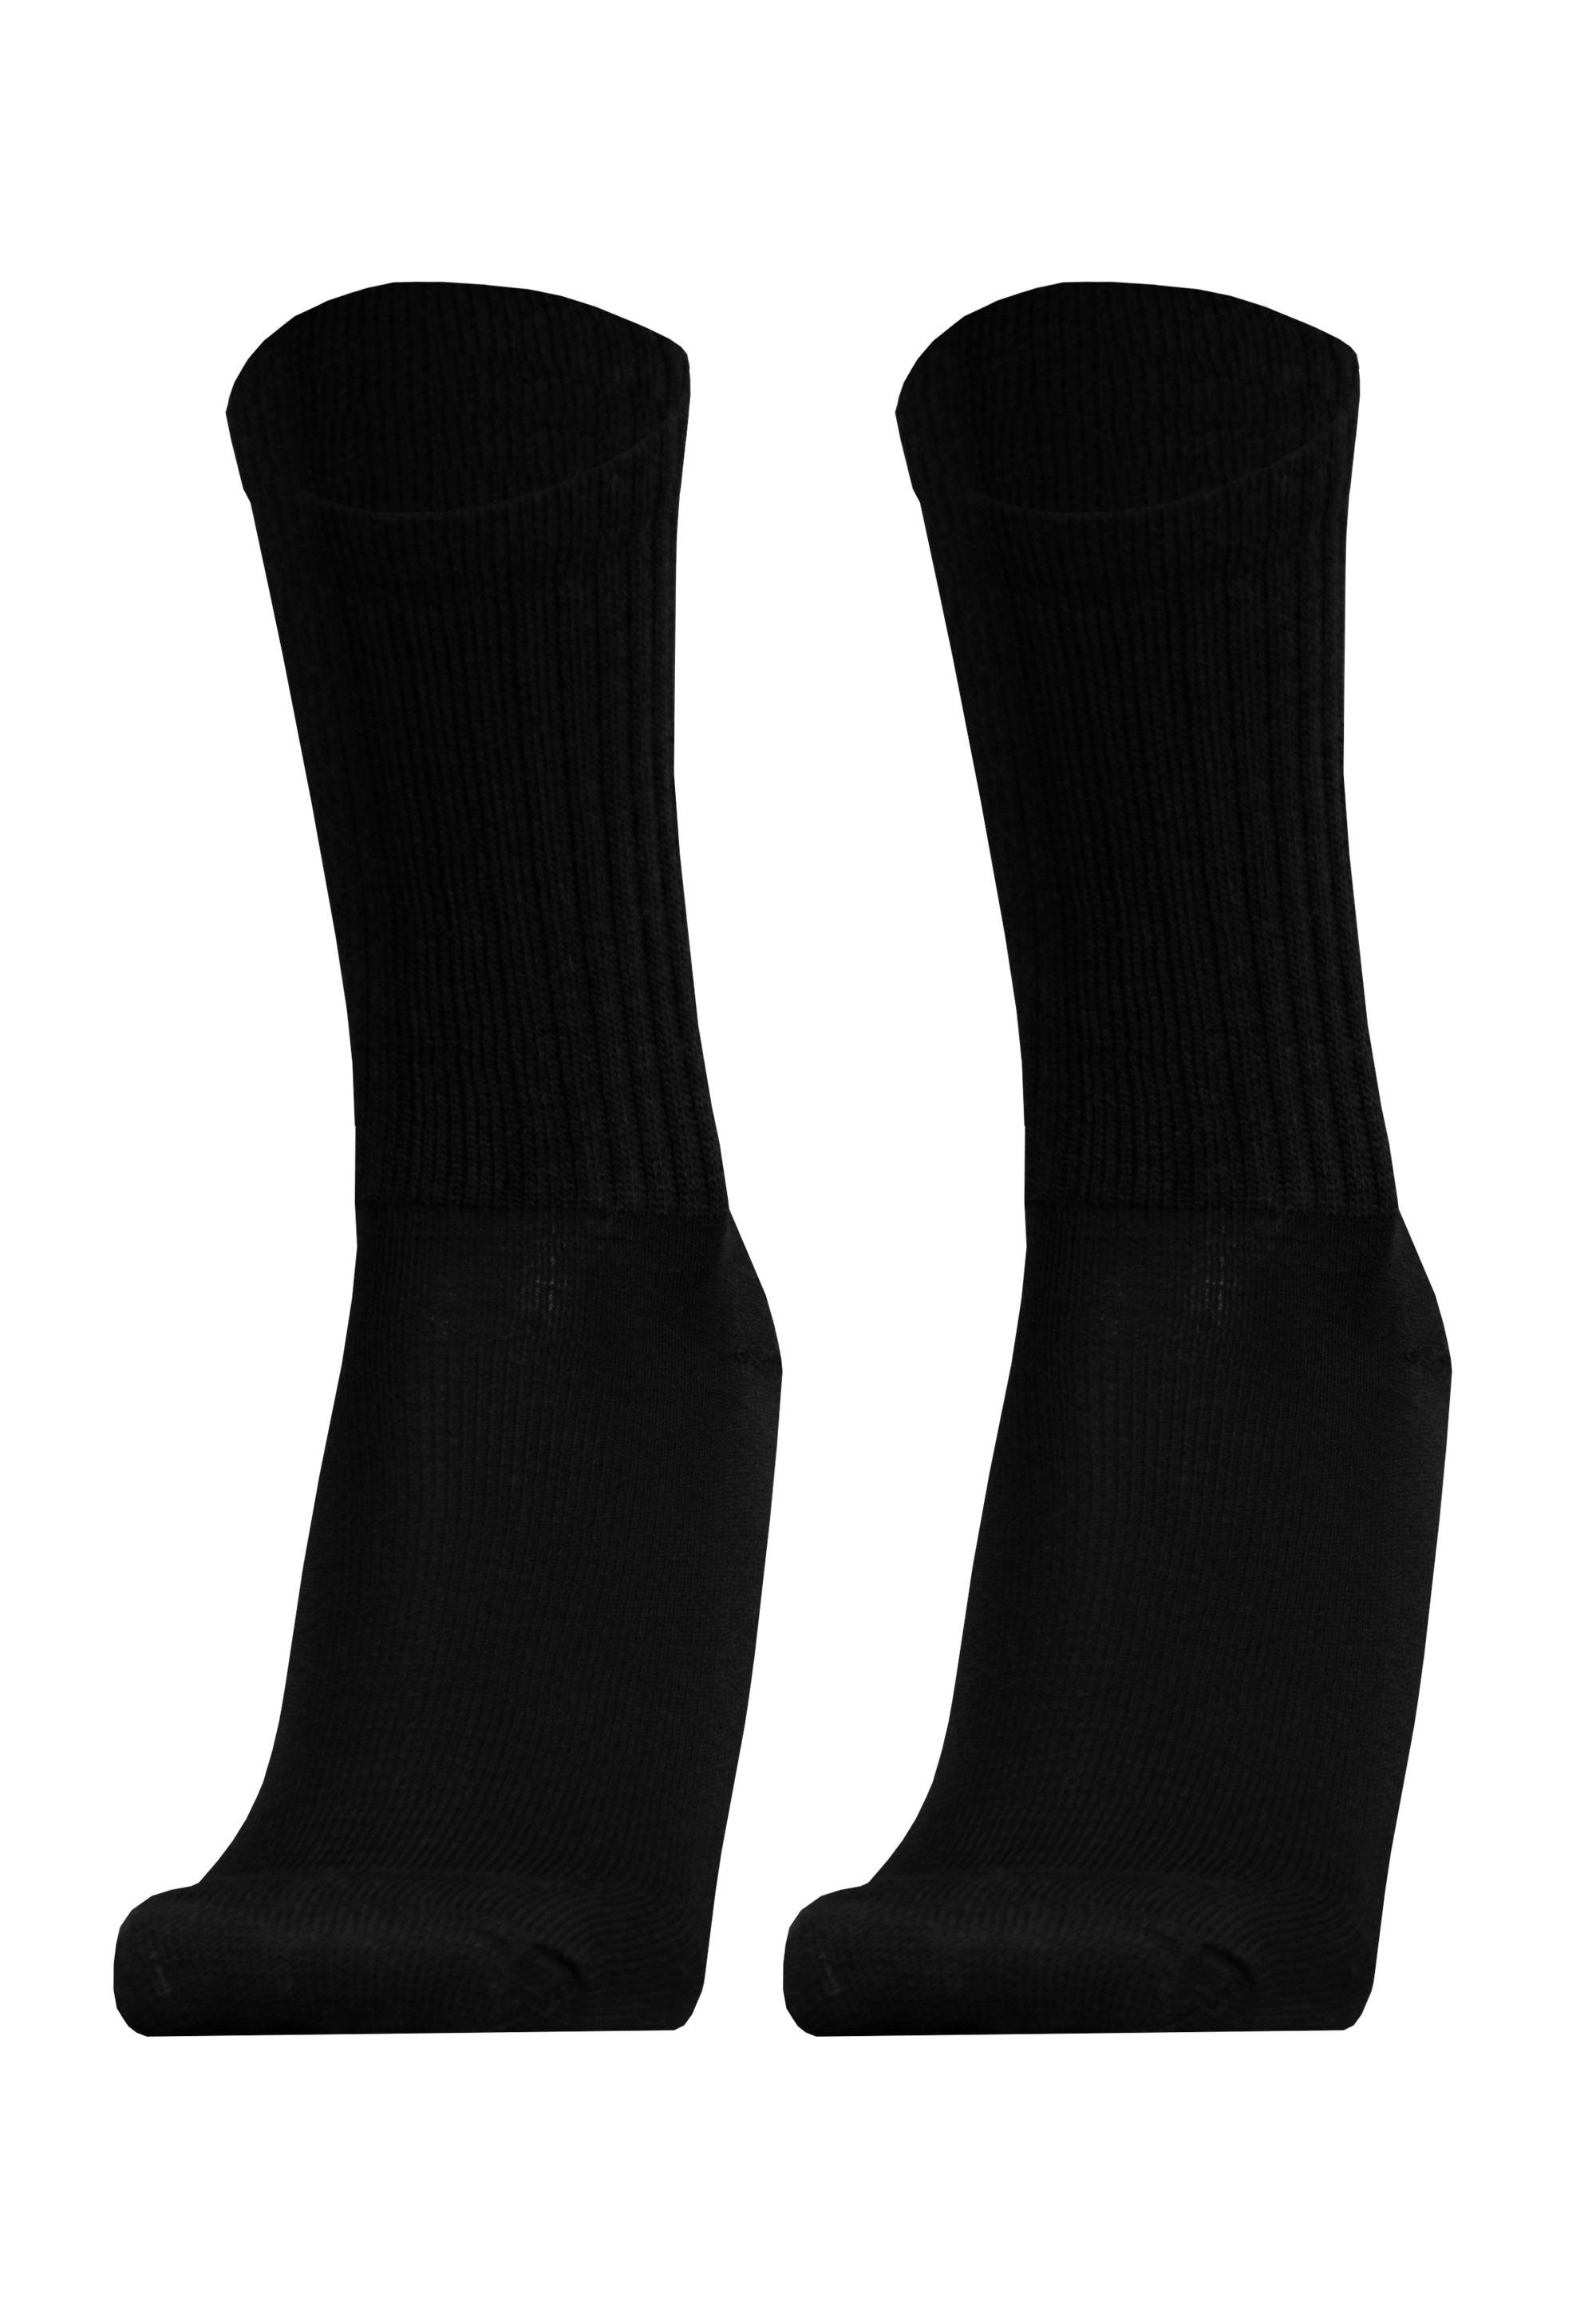 Qualität SPORT 2er UphillSport Pack Socken in MERINO schwarz atmungsaktiver (2-Paar)